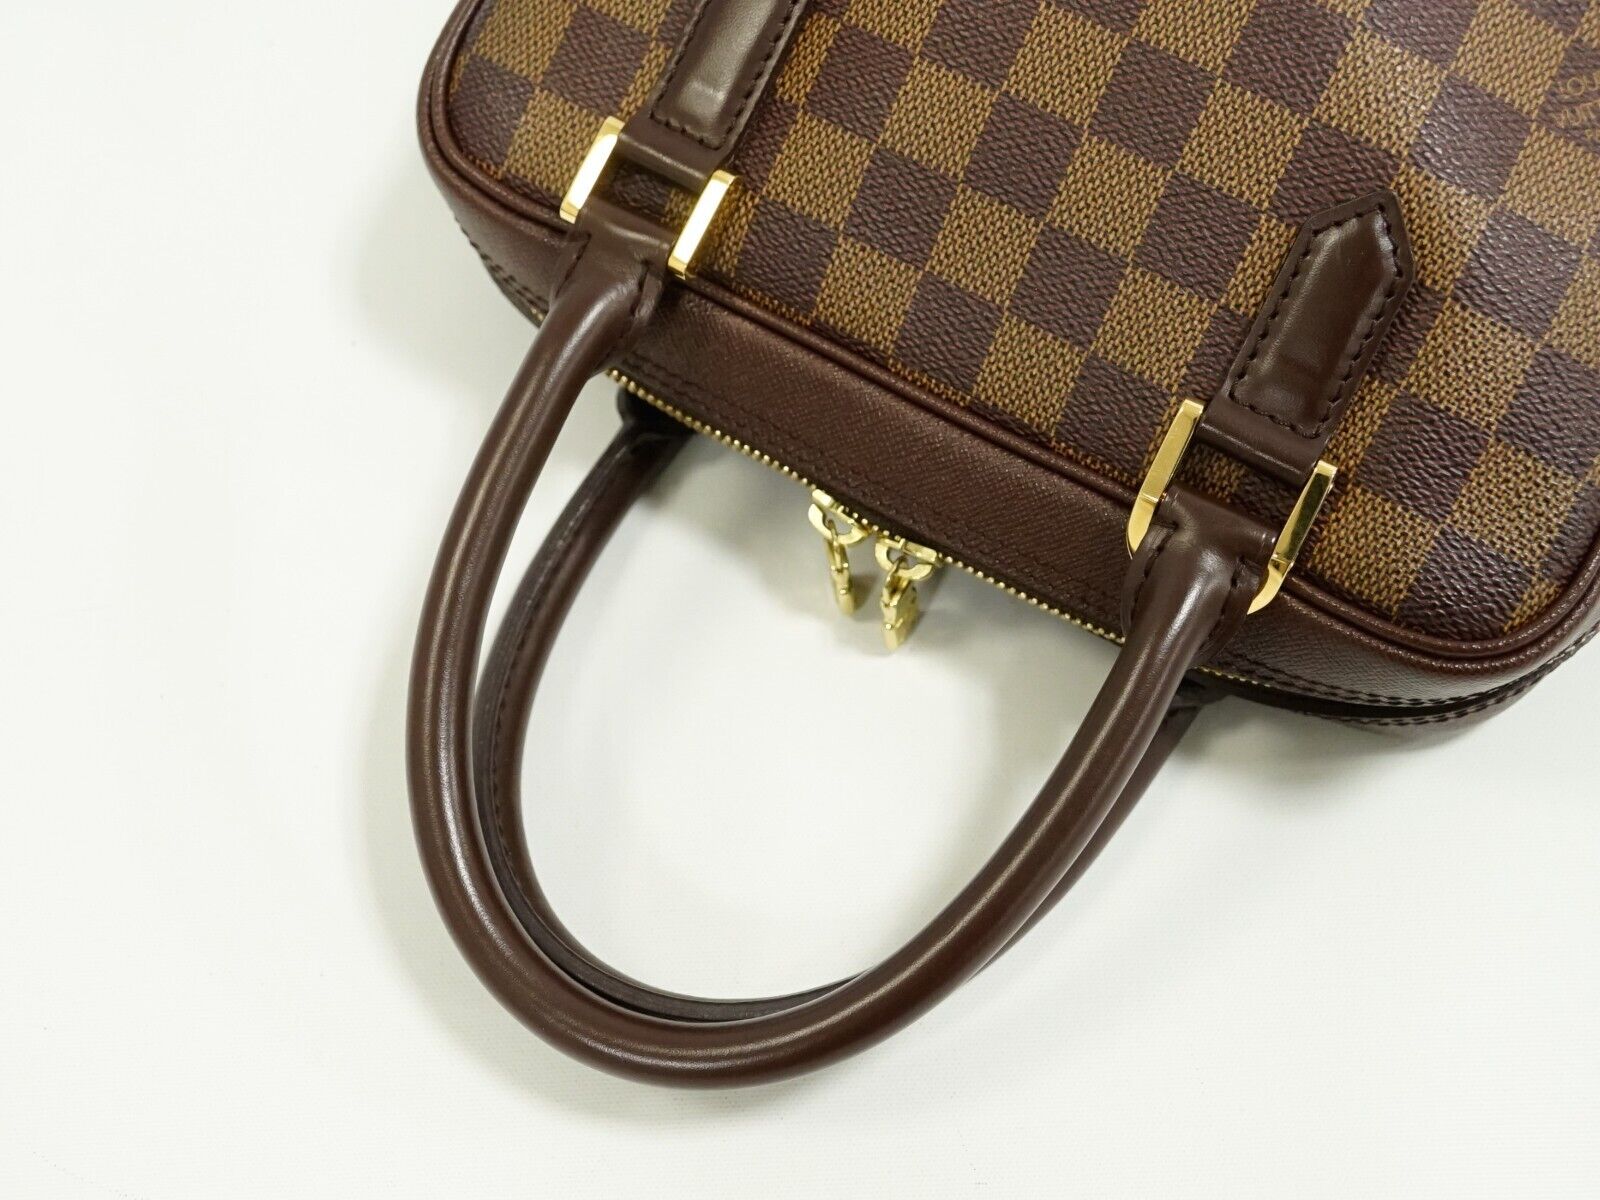 Louis Vuitton, Bags, Louis Vuitton Damier Brera Handbag